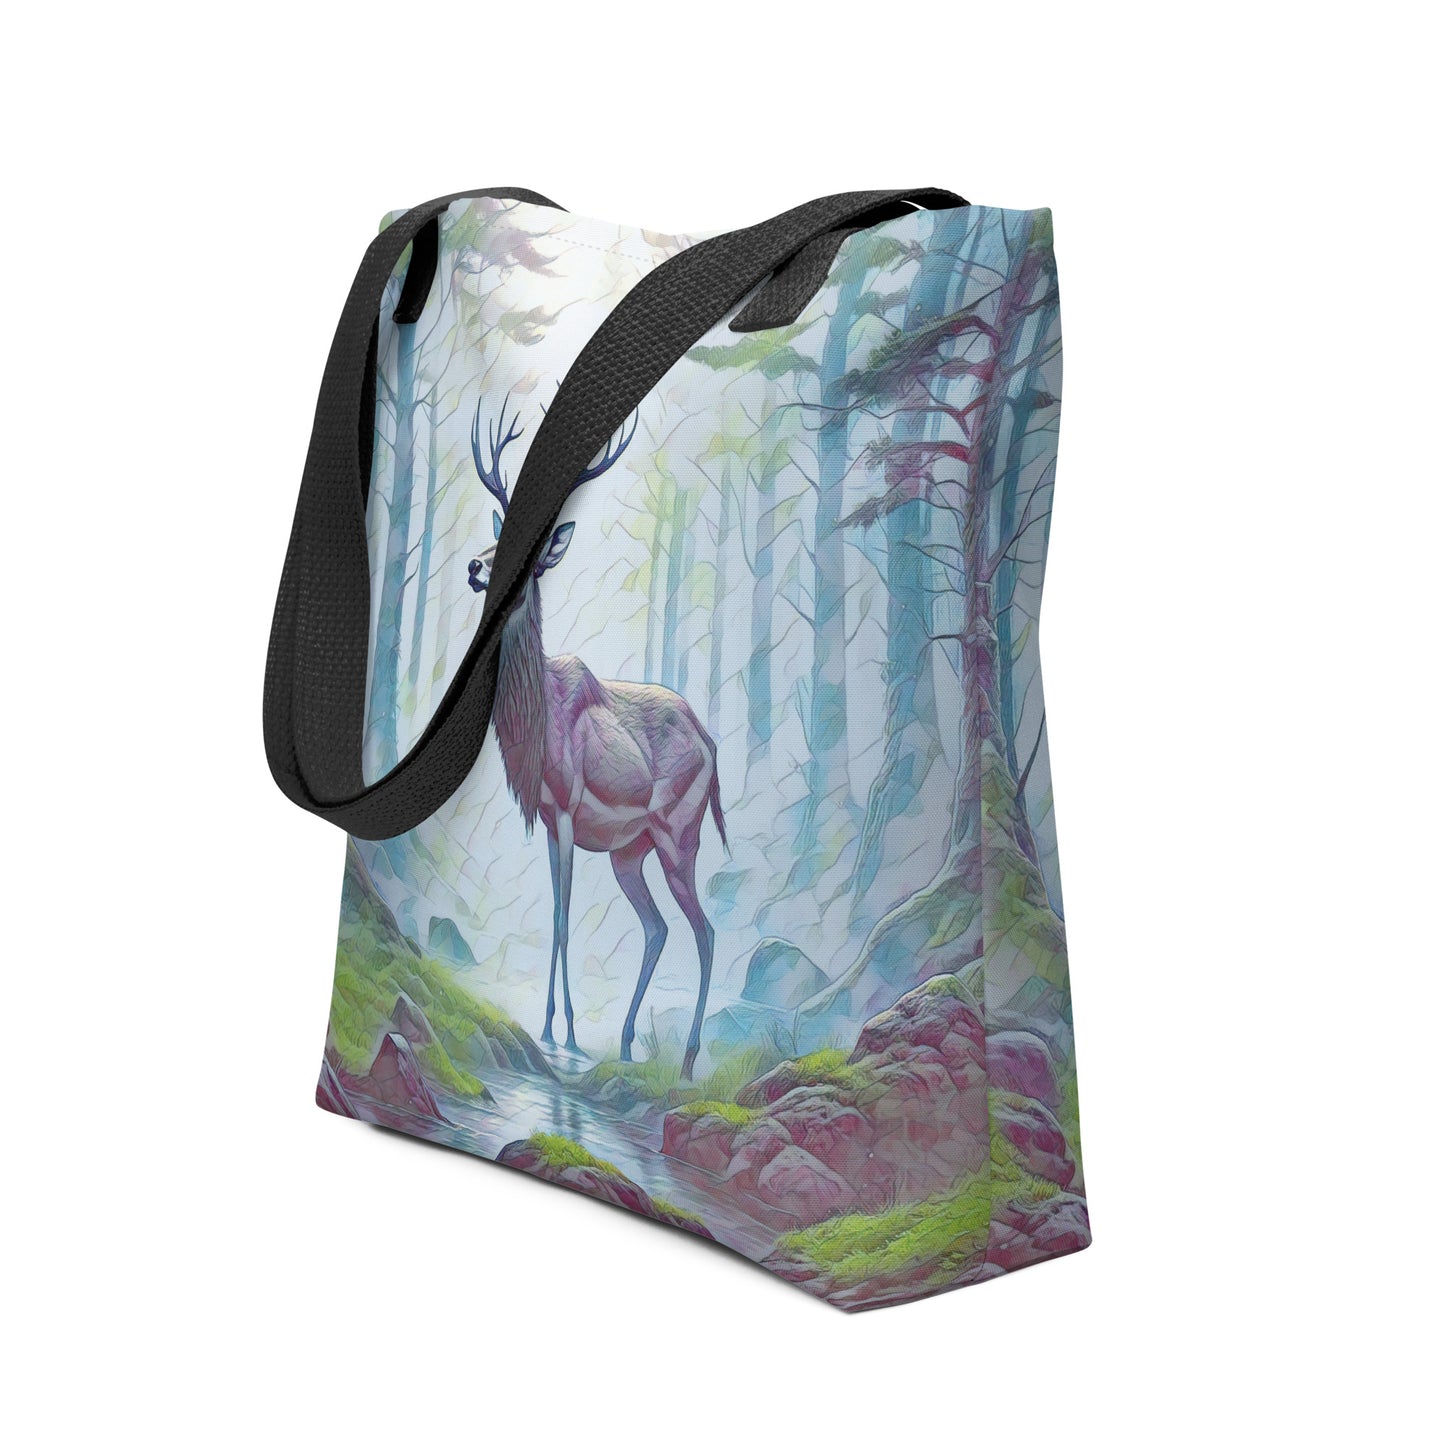 Oregon Deer in the Woods - Digital Art - Tote bag